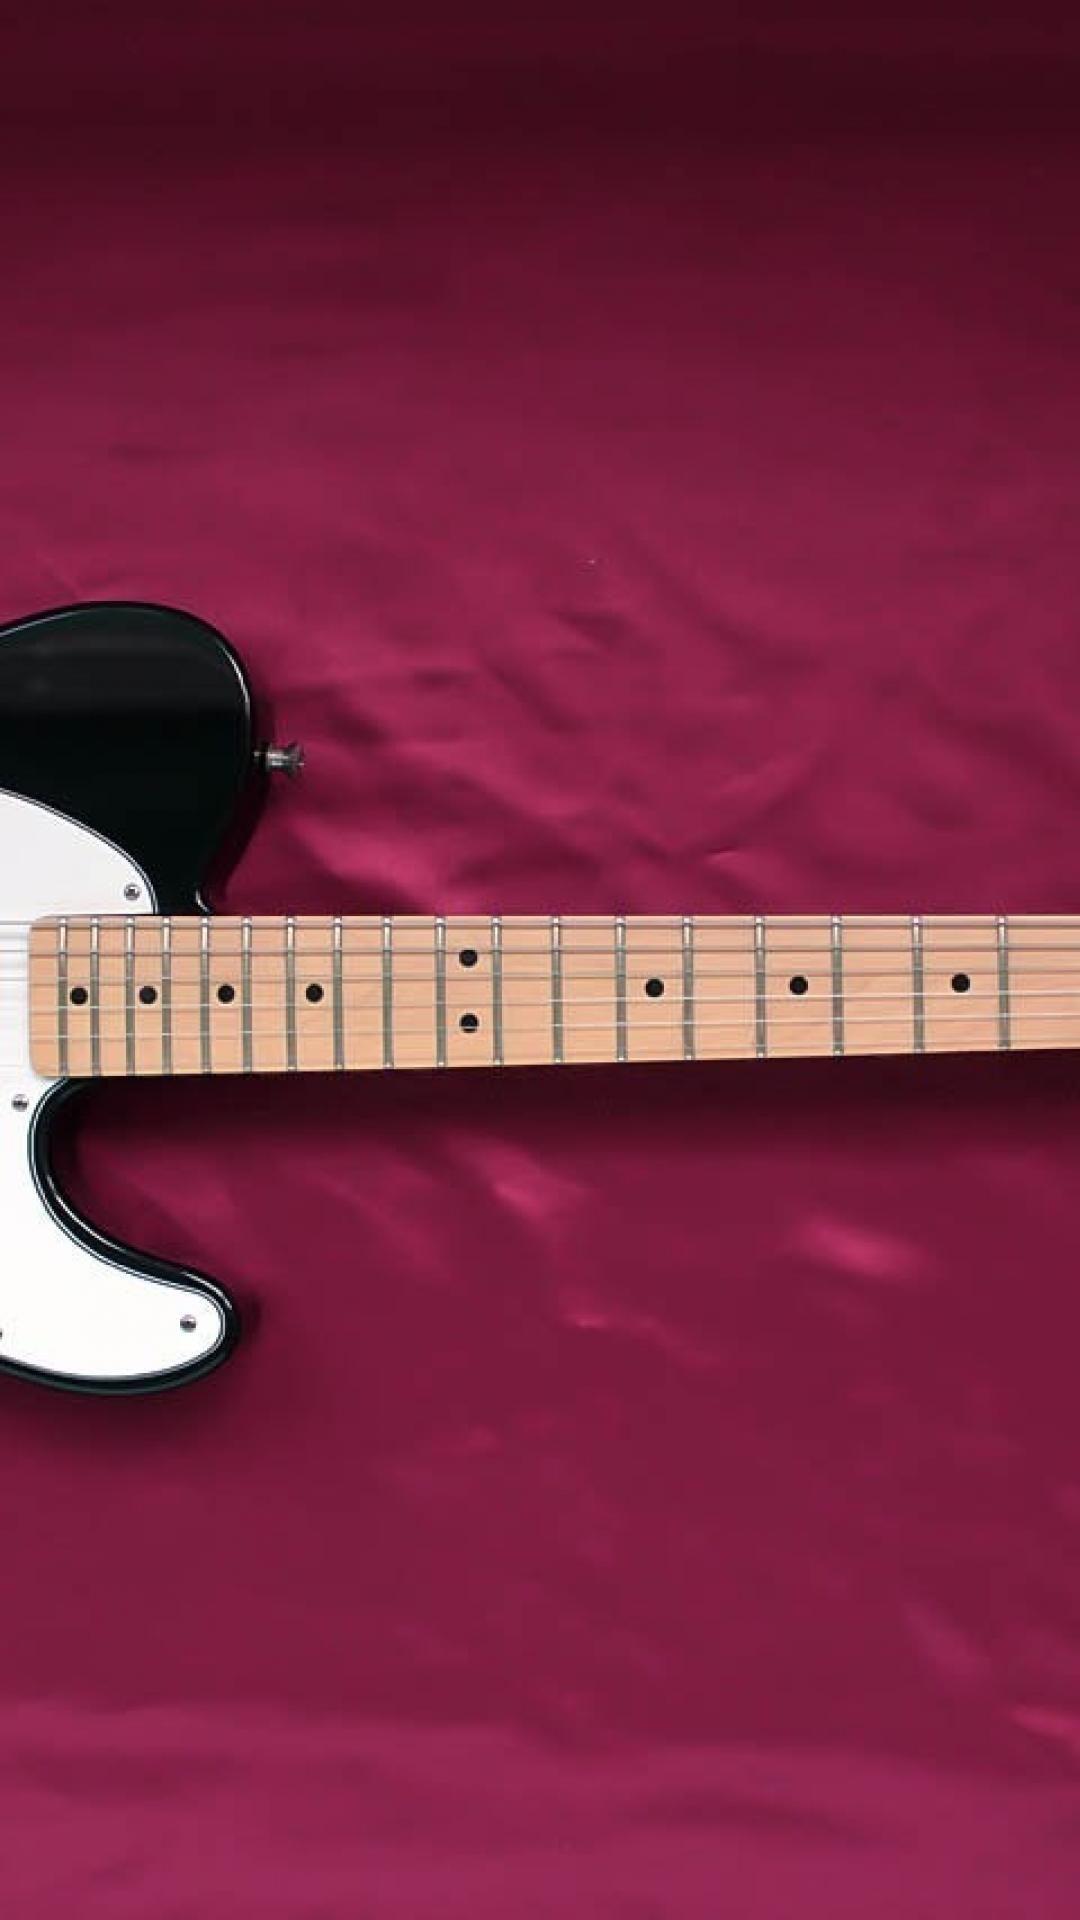 Fender guitars telecaster wallpaper